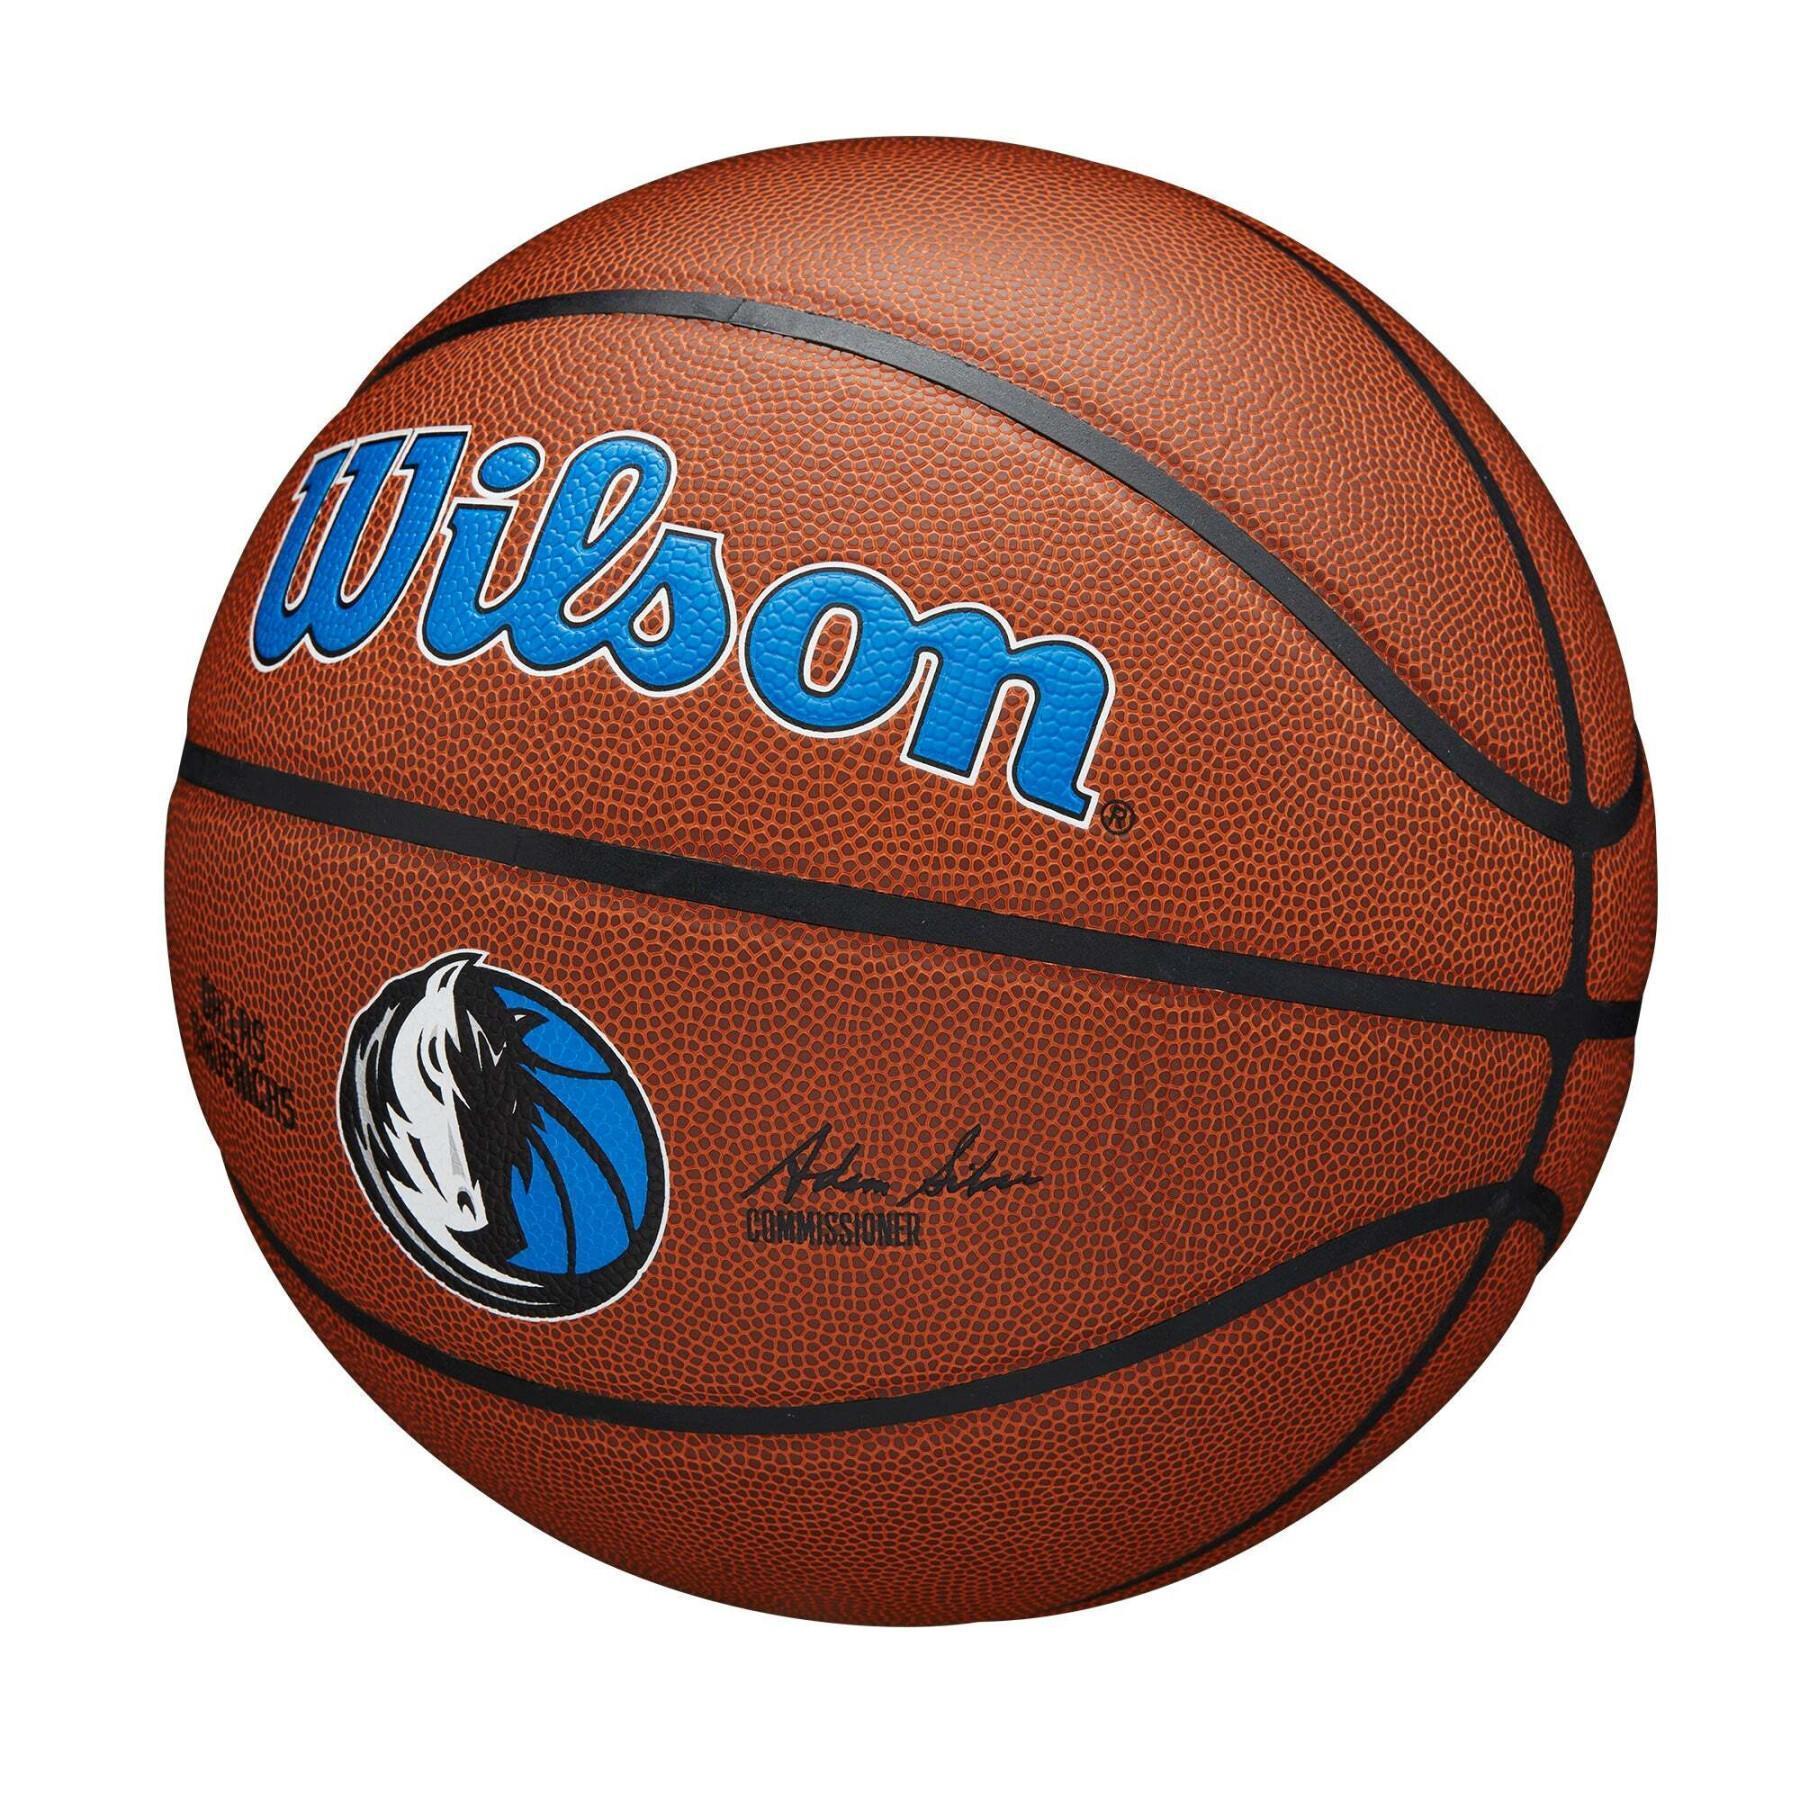 Ballon Dallas Mavericks NBA Team Alliance